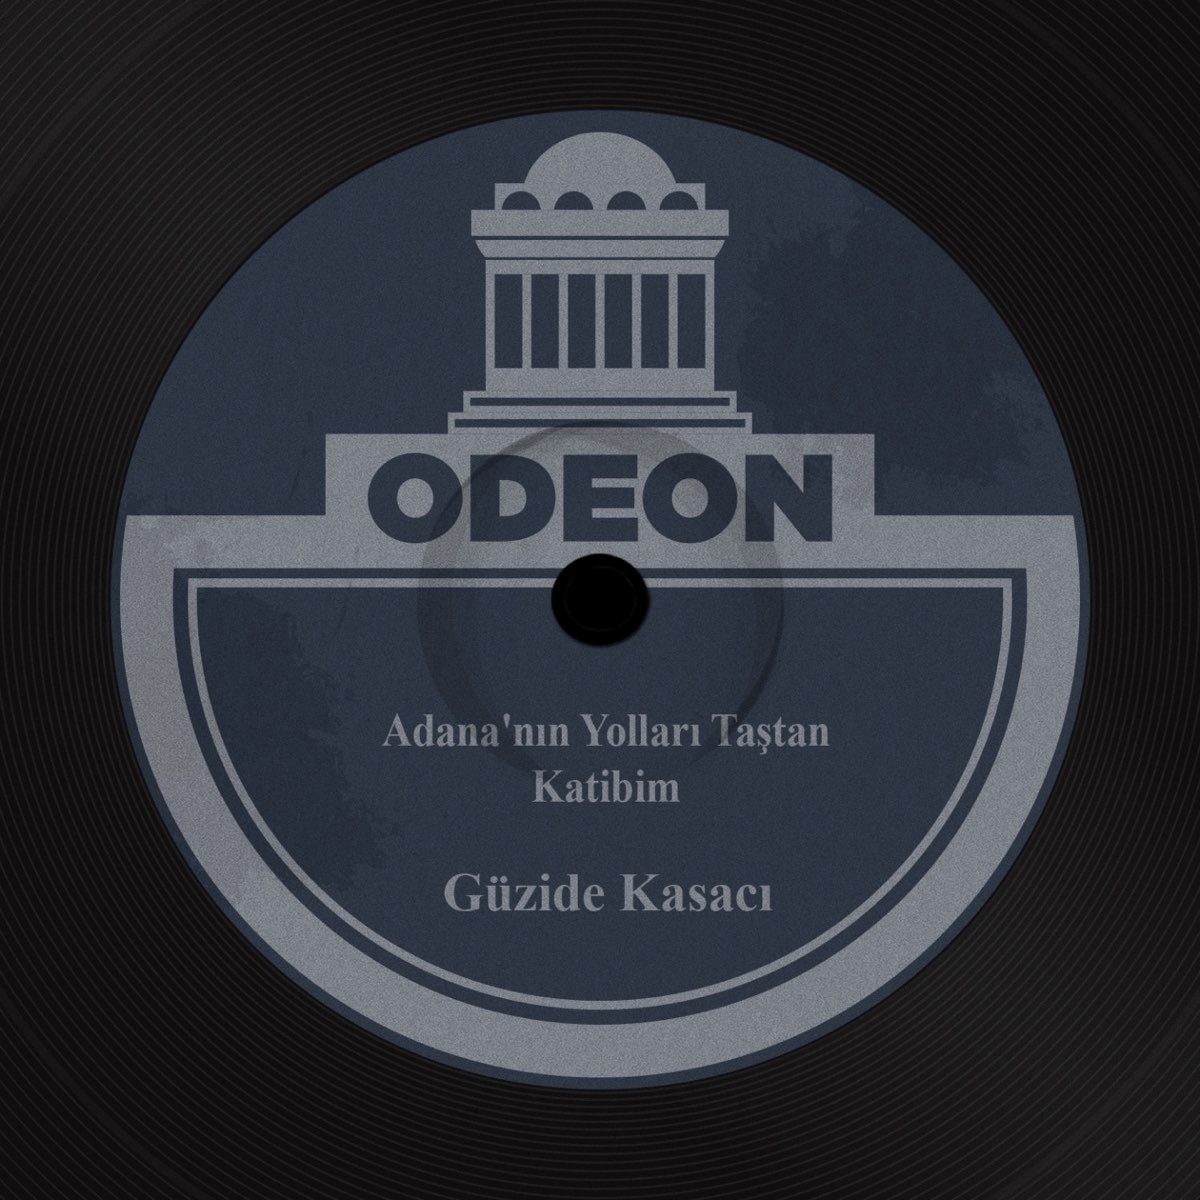 Adana'nın Yolları Taştan / Katibim - Single - Album by Güzide Kasacı -  Apple Music